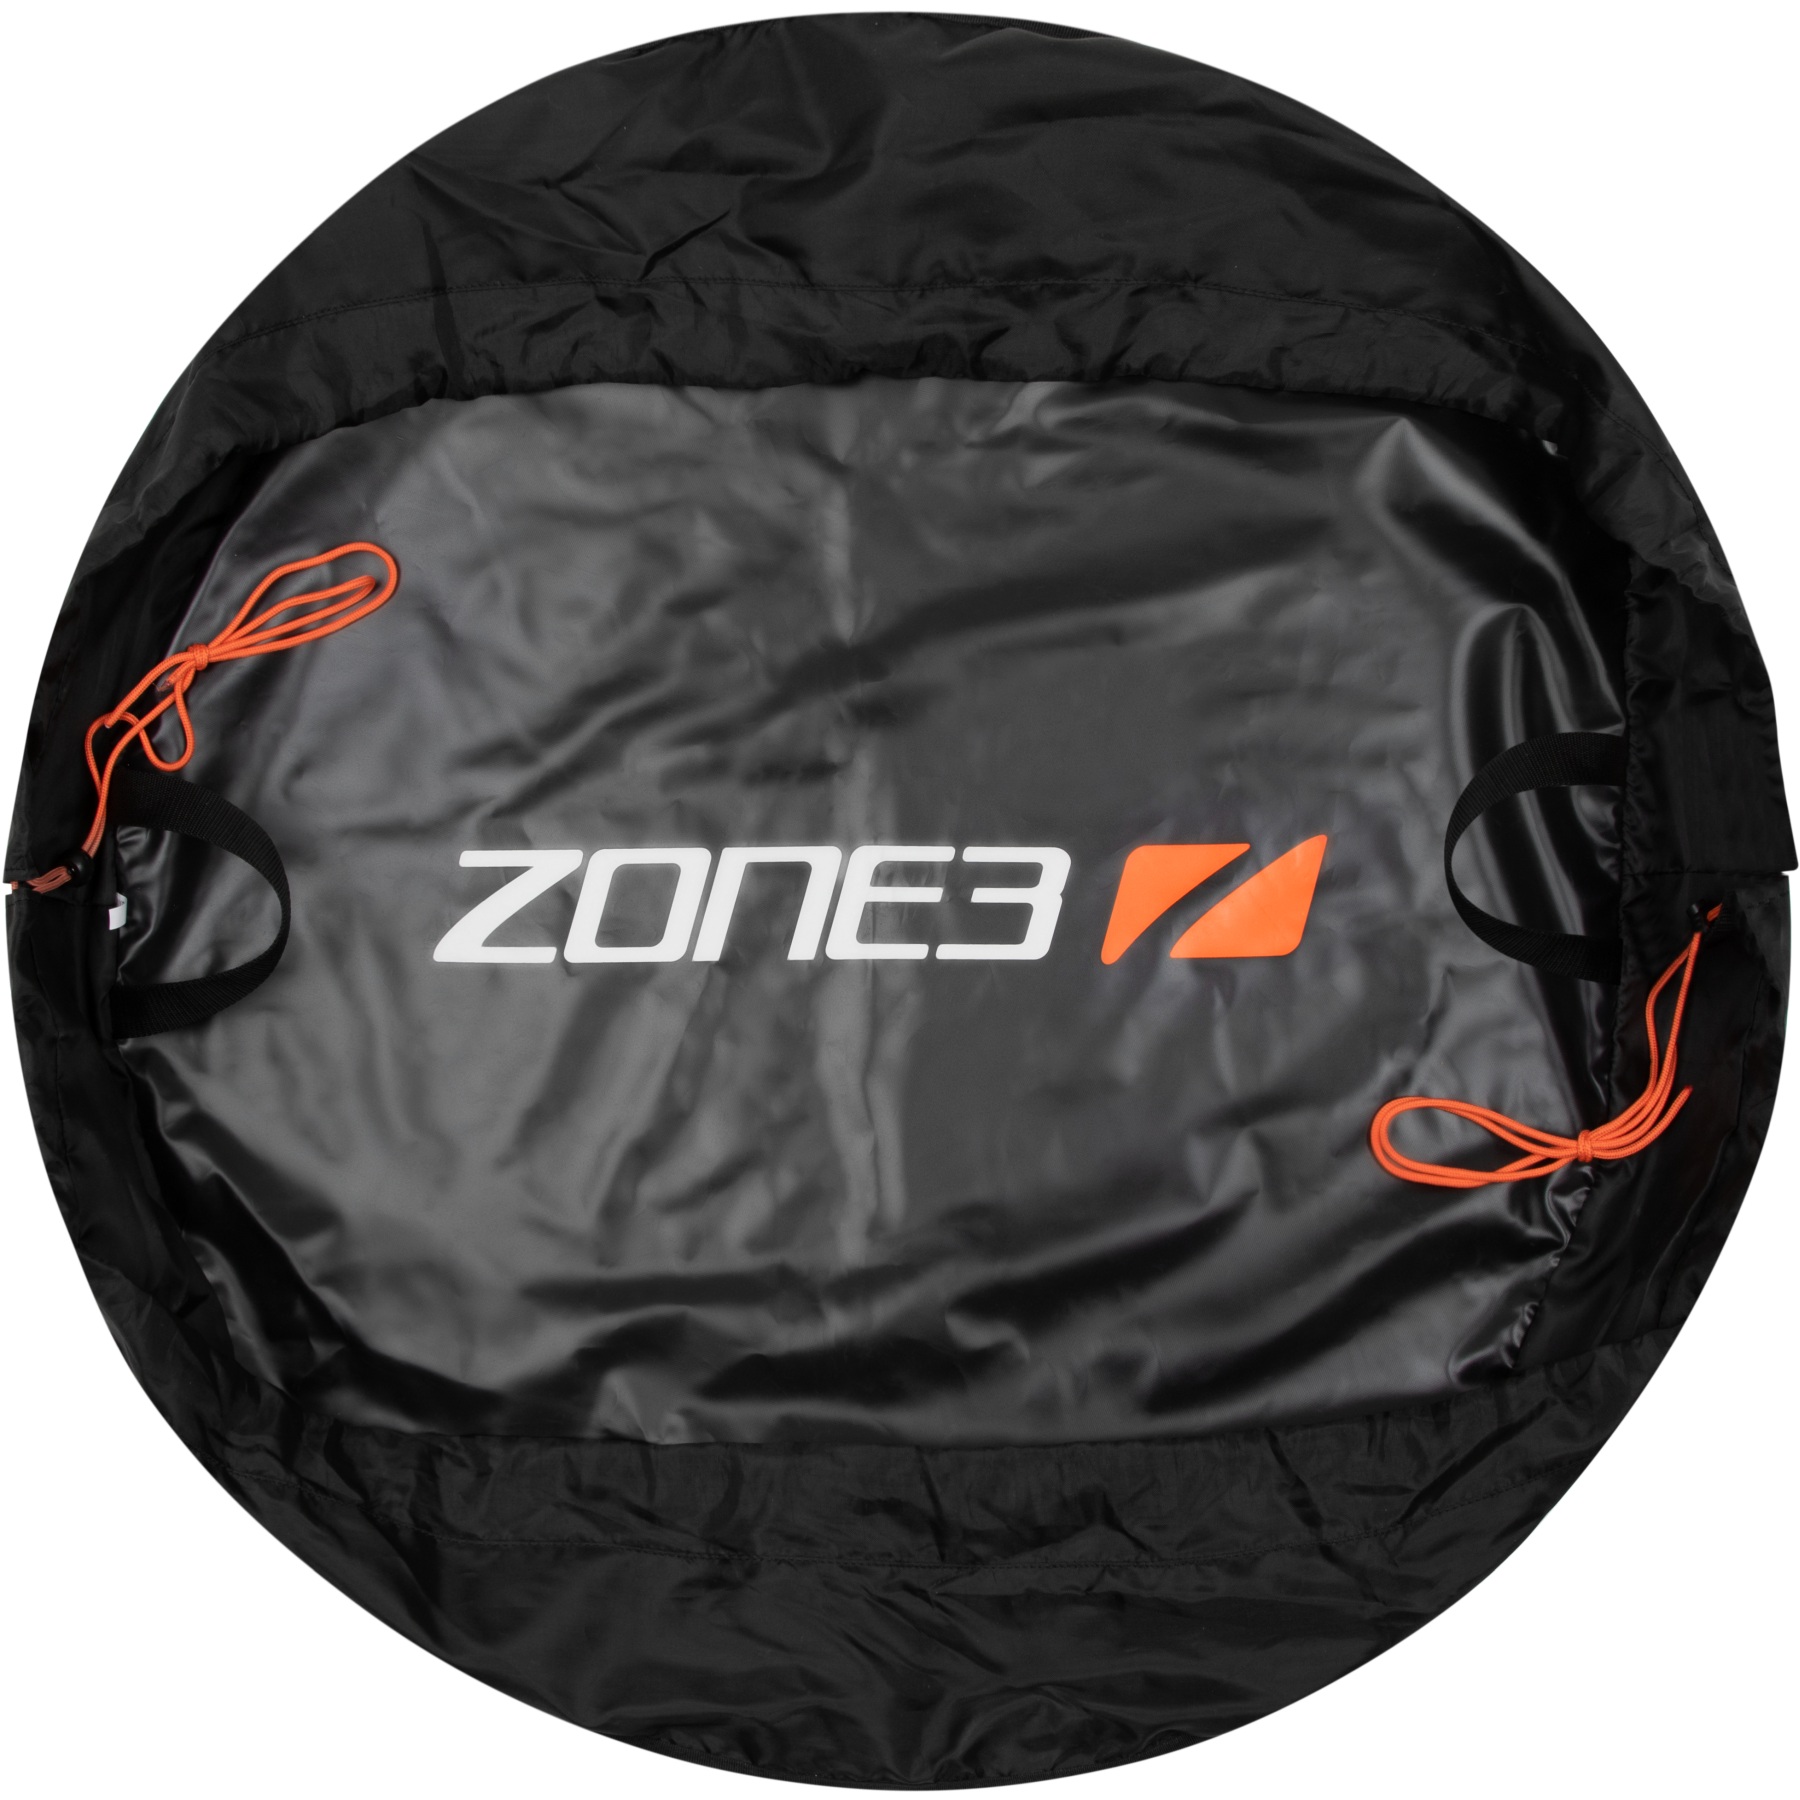 Produktbild von Zone3 Wetsuit Wechselmatte - schwarz